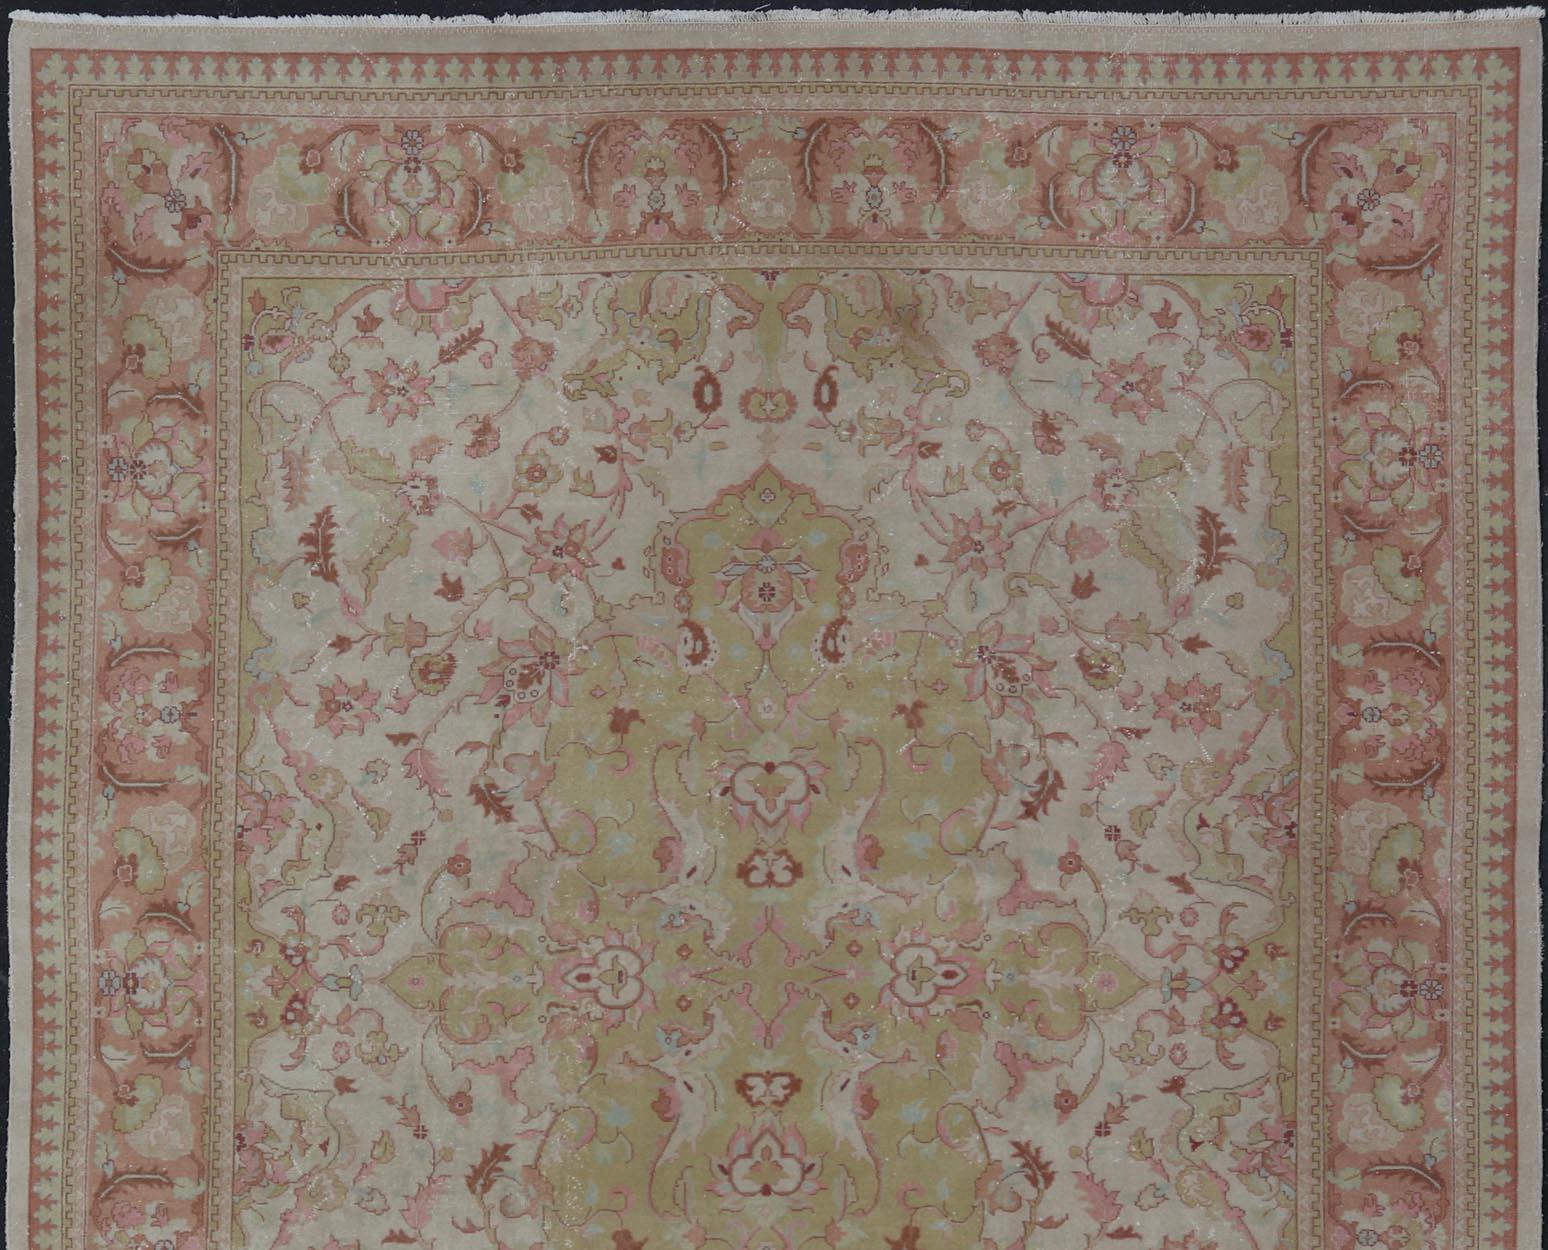 Grand tapis vintage indien Amritsar de Keivan Woven Arts avec des motifs floraux en ivoire, jaune clair, vert, saumon et rose. Keivan Woven Arts / tapis / G-0304 / Milieu du XXe siècle / 1940 circa / Amritsar antique

Mesures : 11'9 x 14'5.   
    